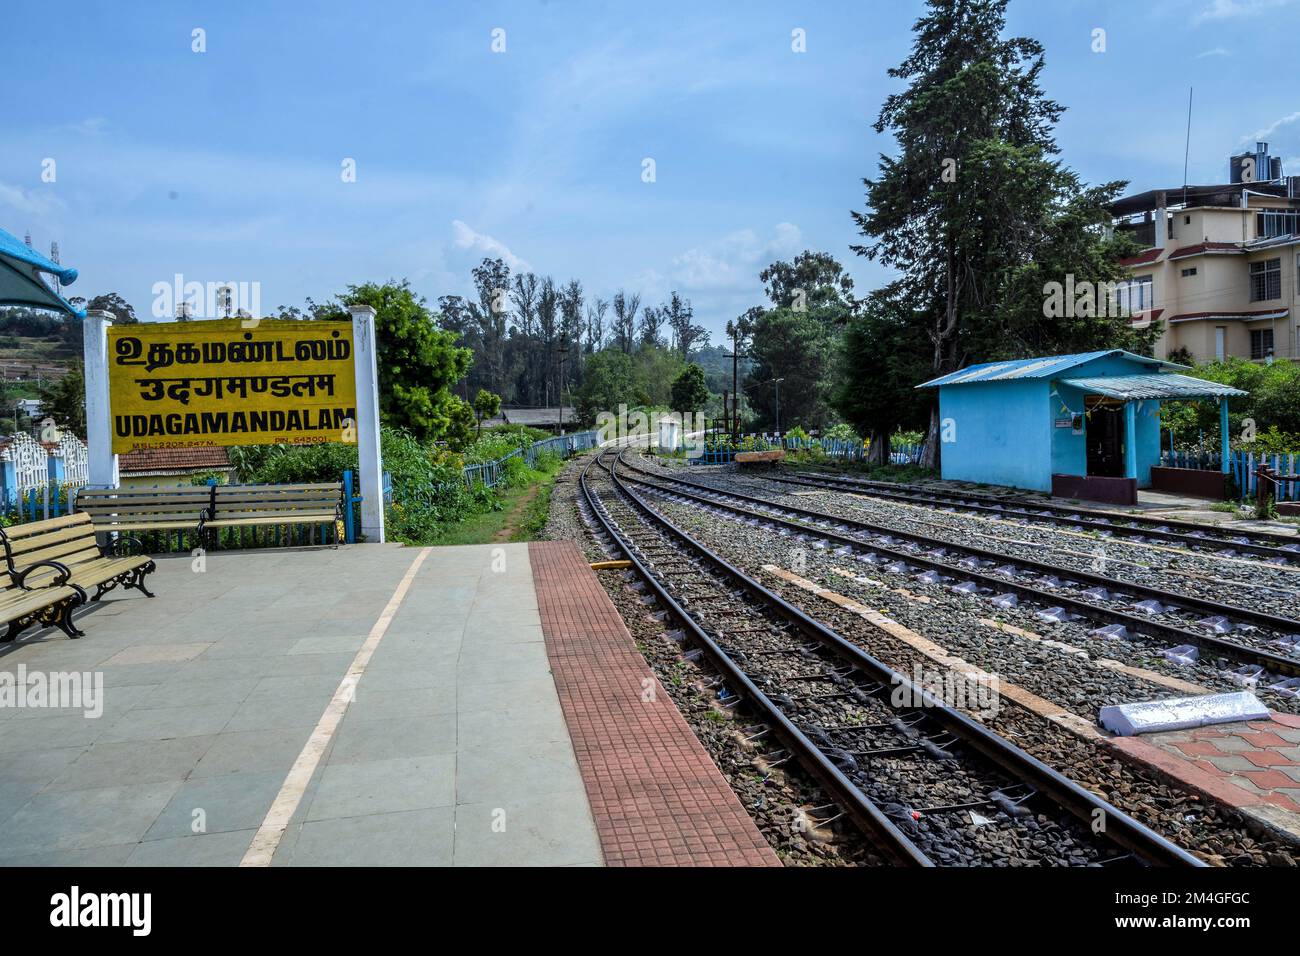 Railway Station, signage, Ooty, Udhagamandalam, Tamil Nadu, India Stock Photo